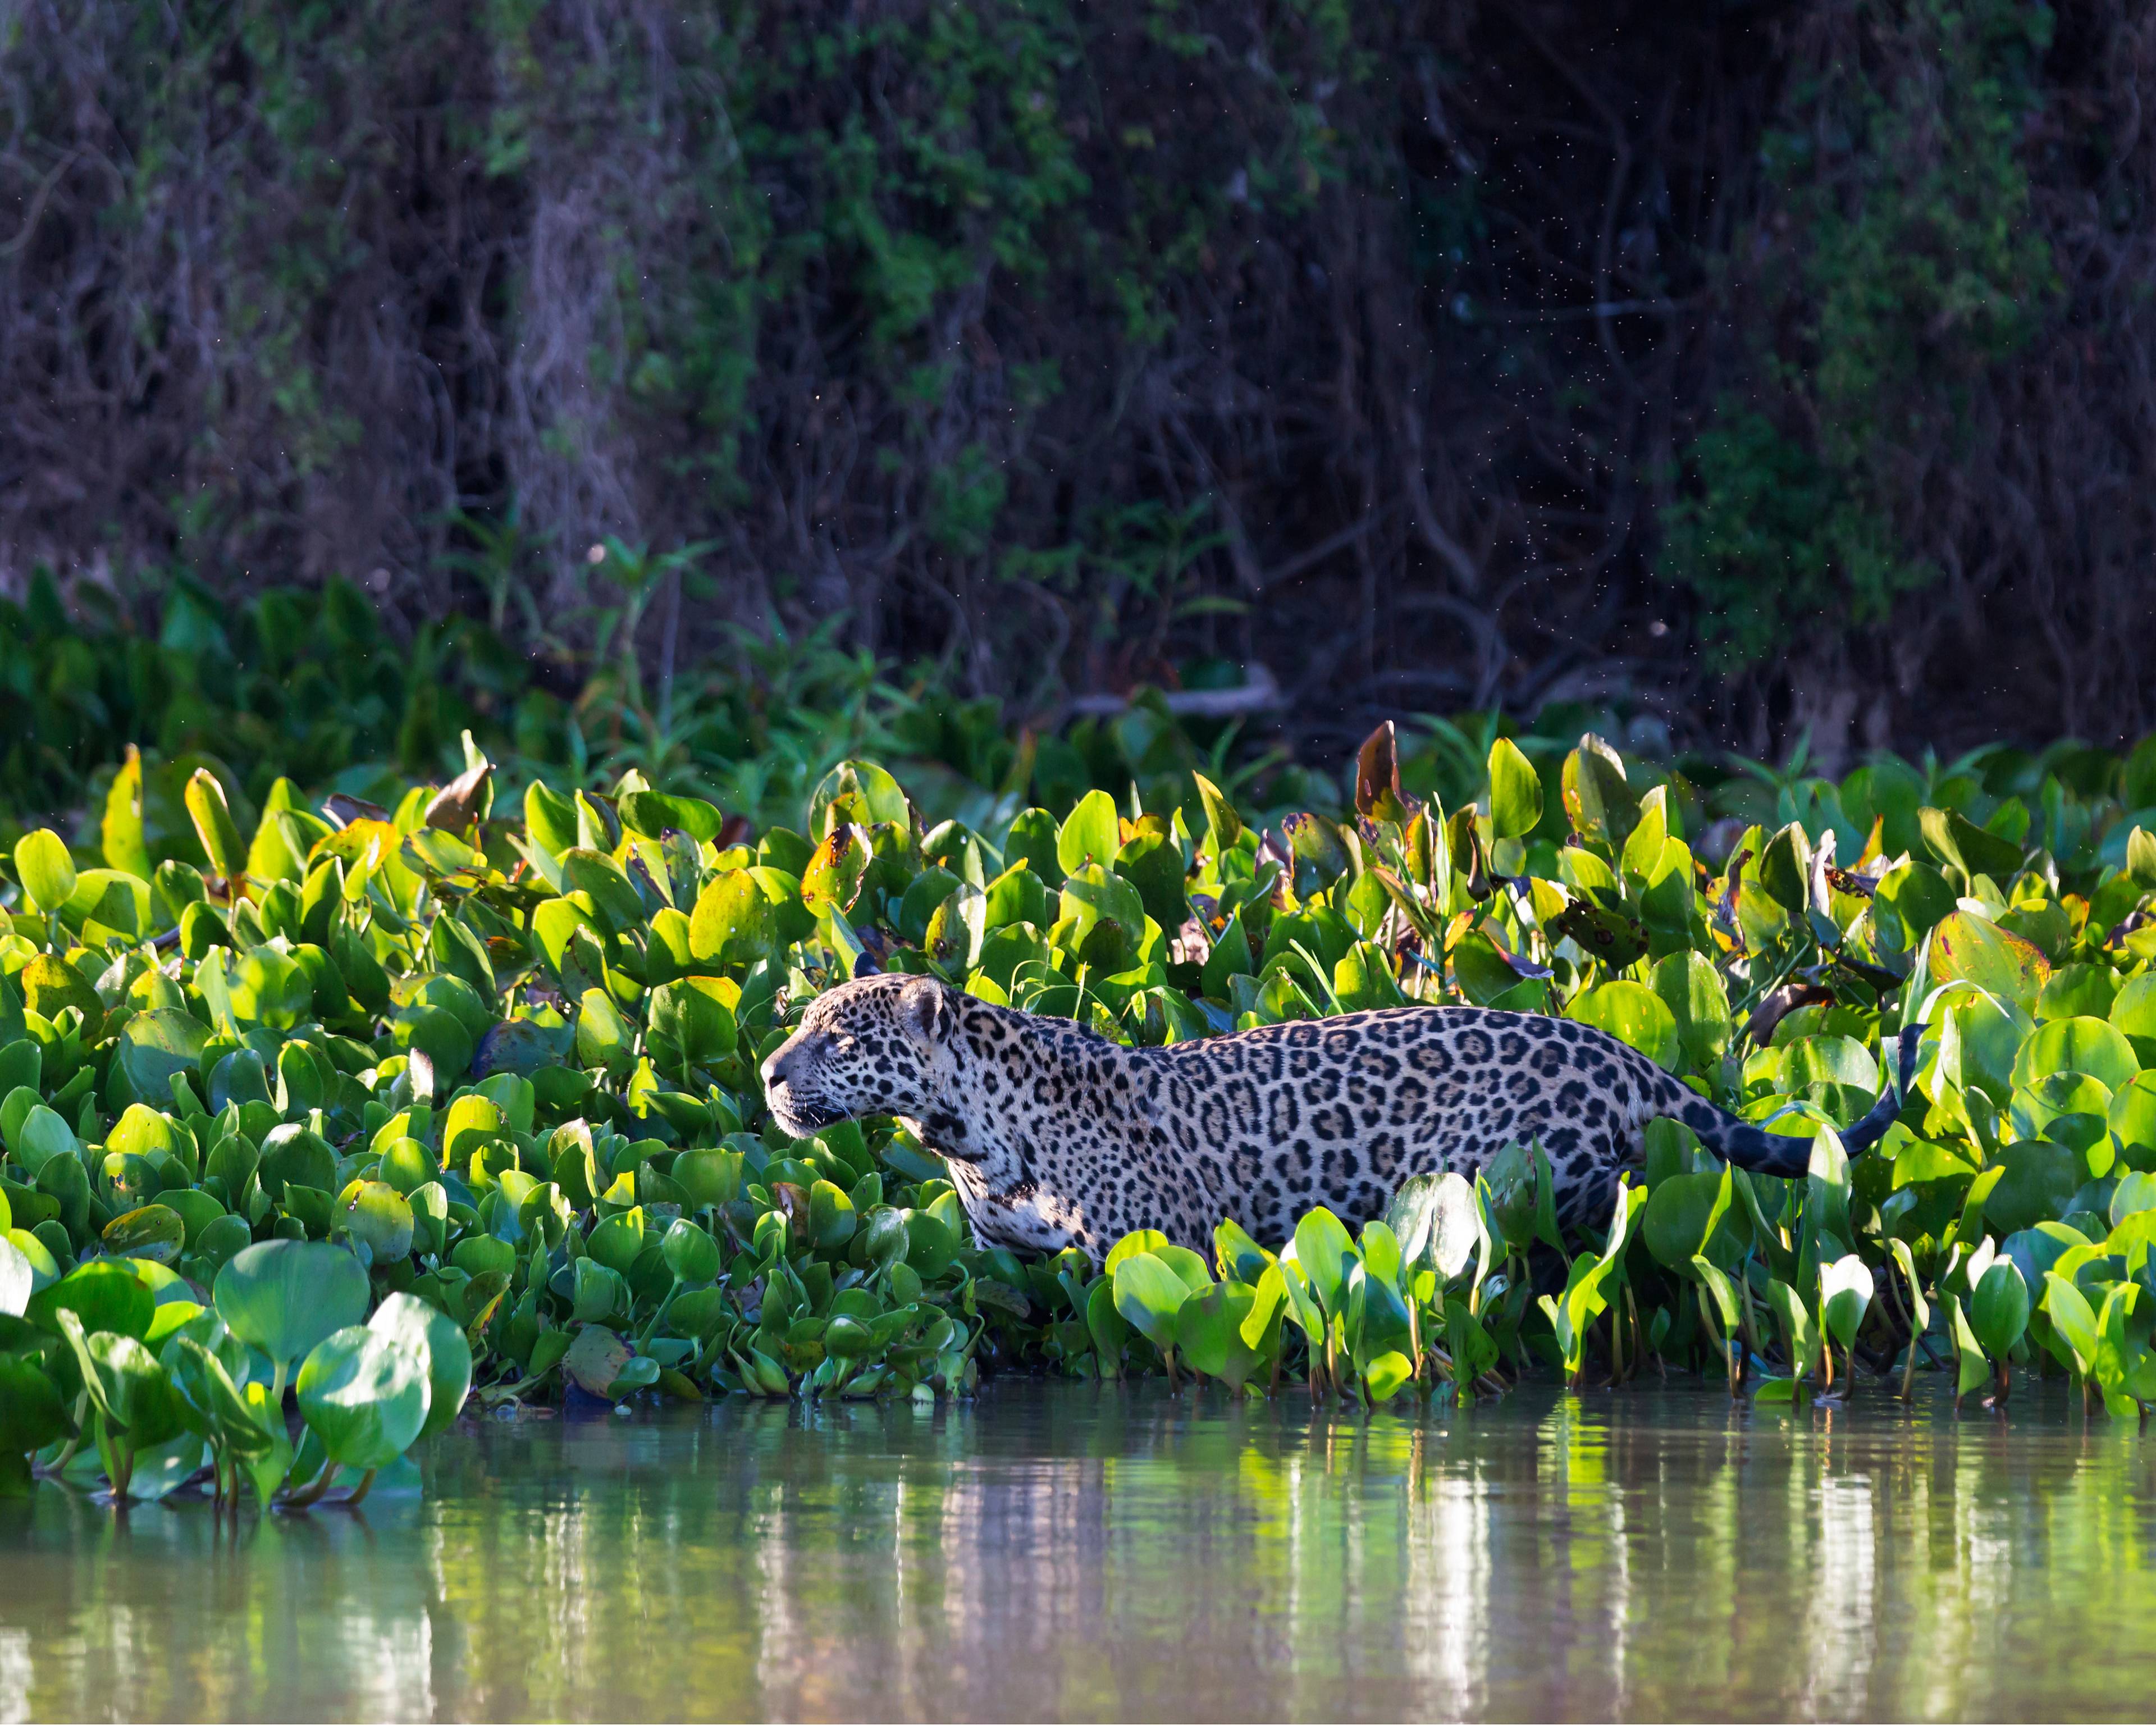 Le capitali Storiche ed il regno del giaguaro